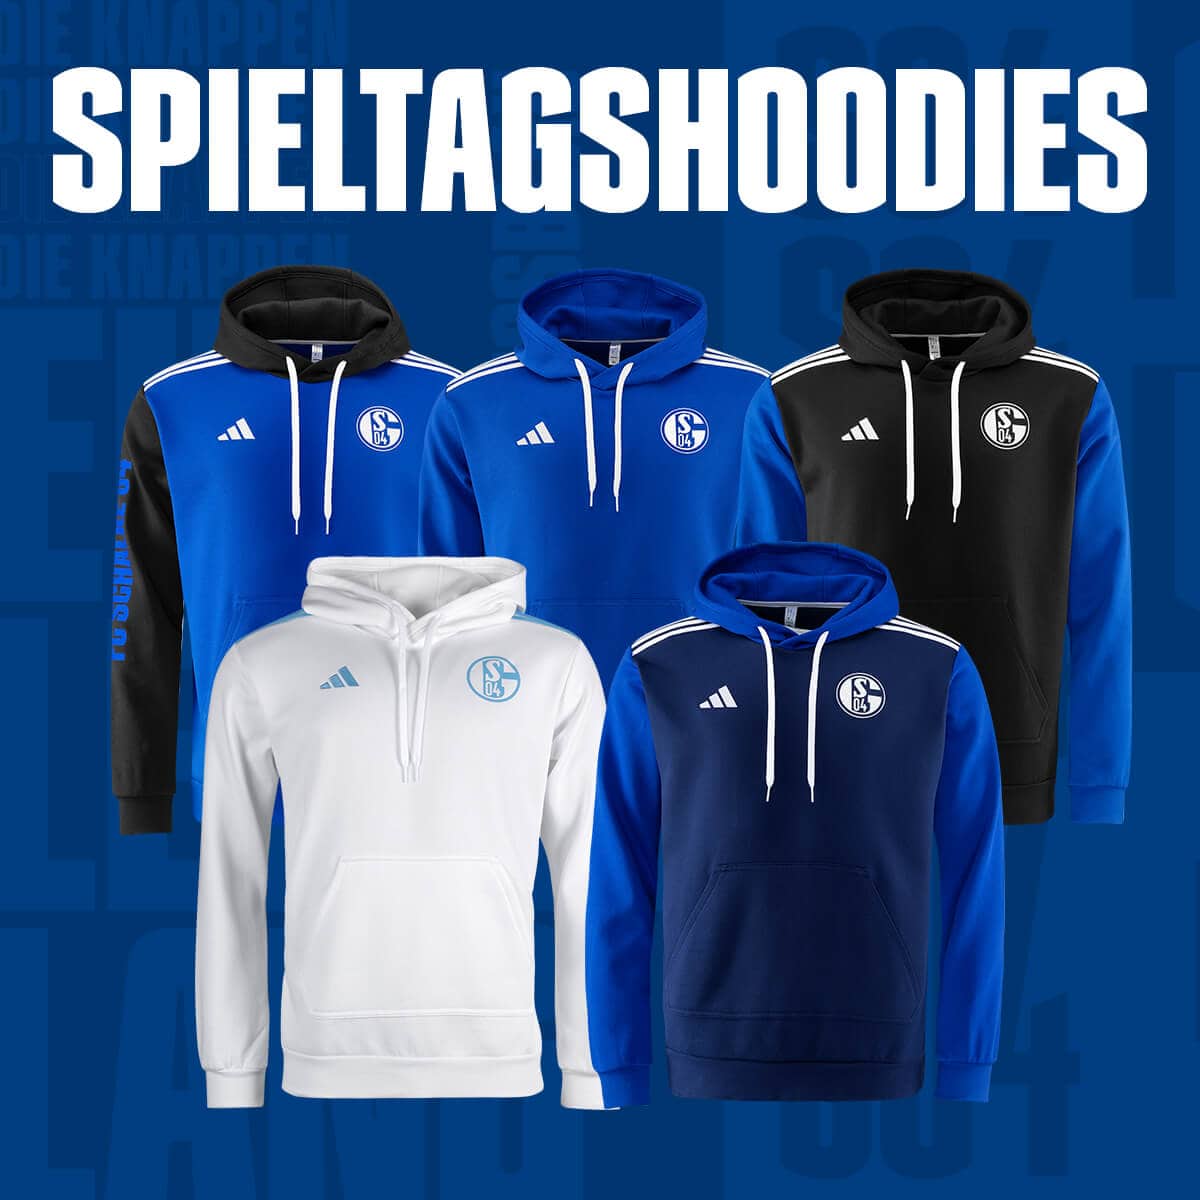 Spieltagshoodies adidas FC Schalke 04